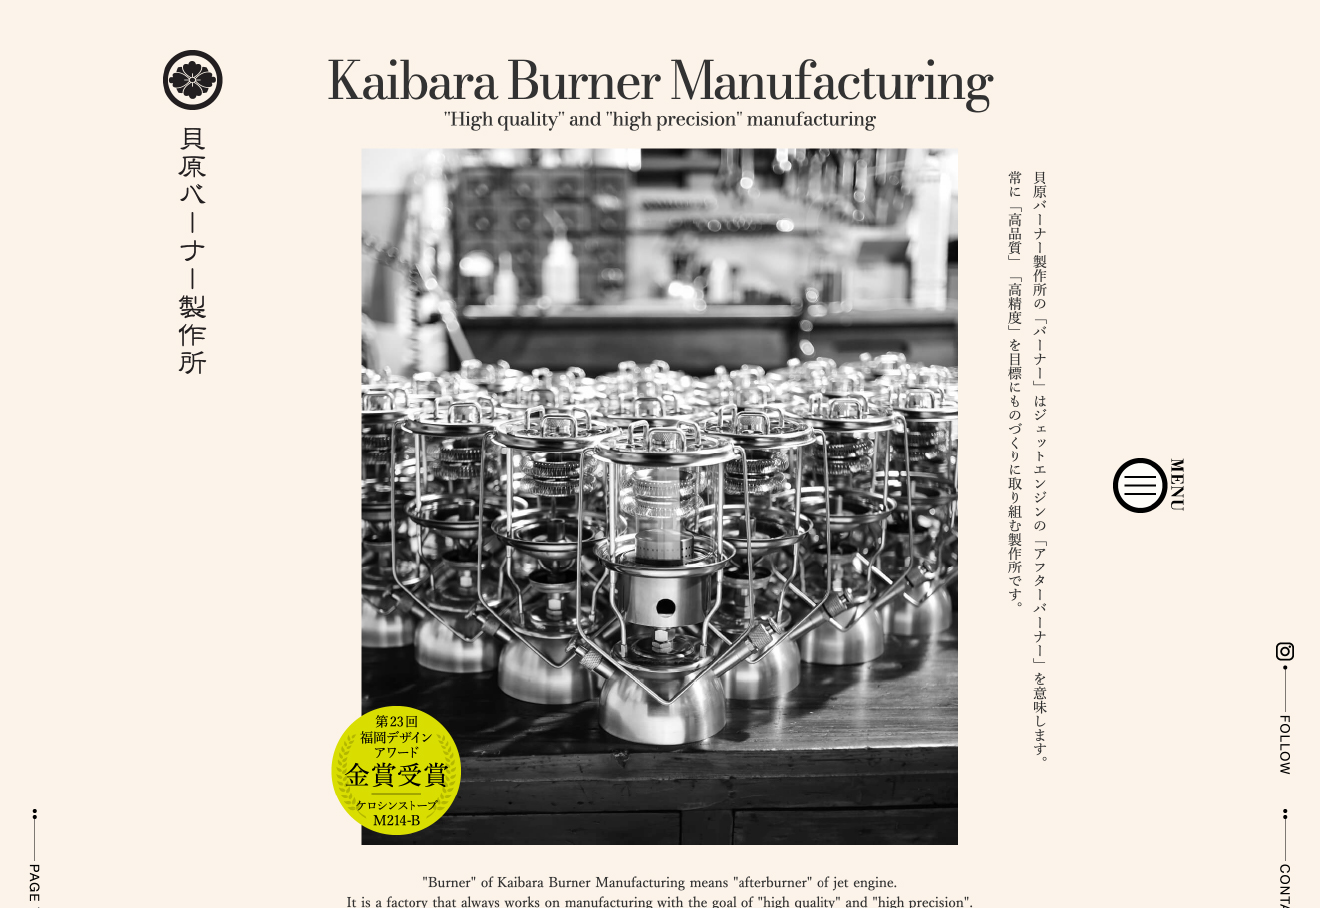 Kaibara Burner Manufacturing